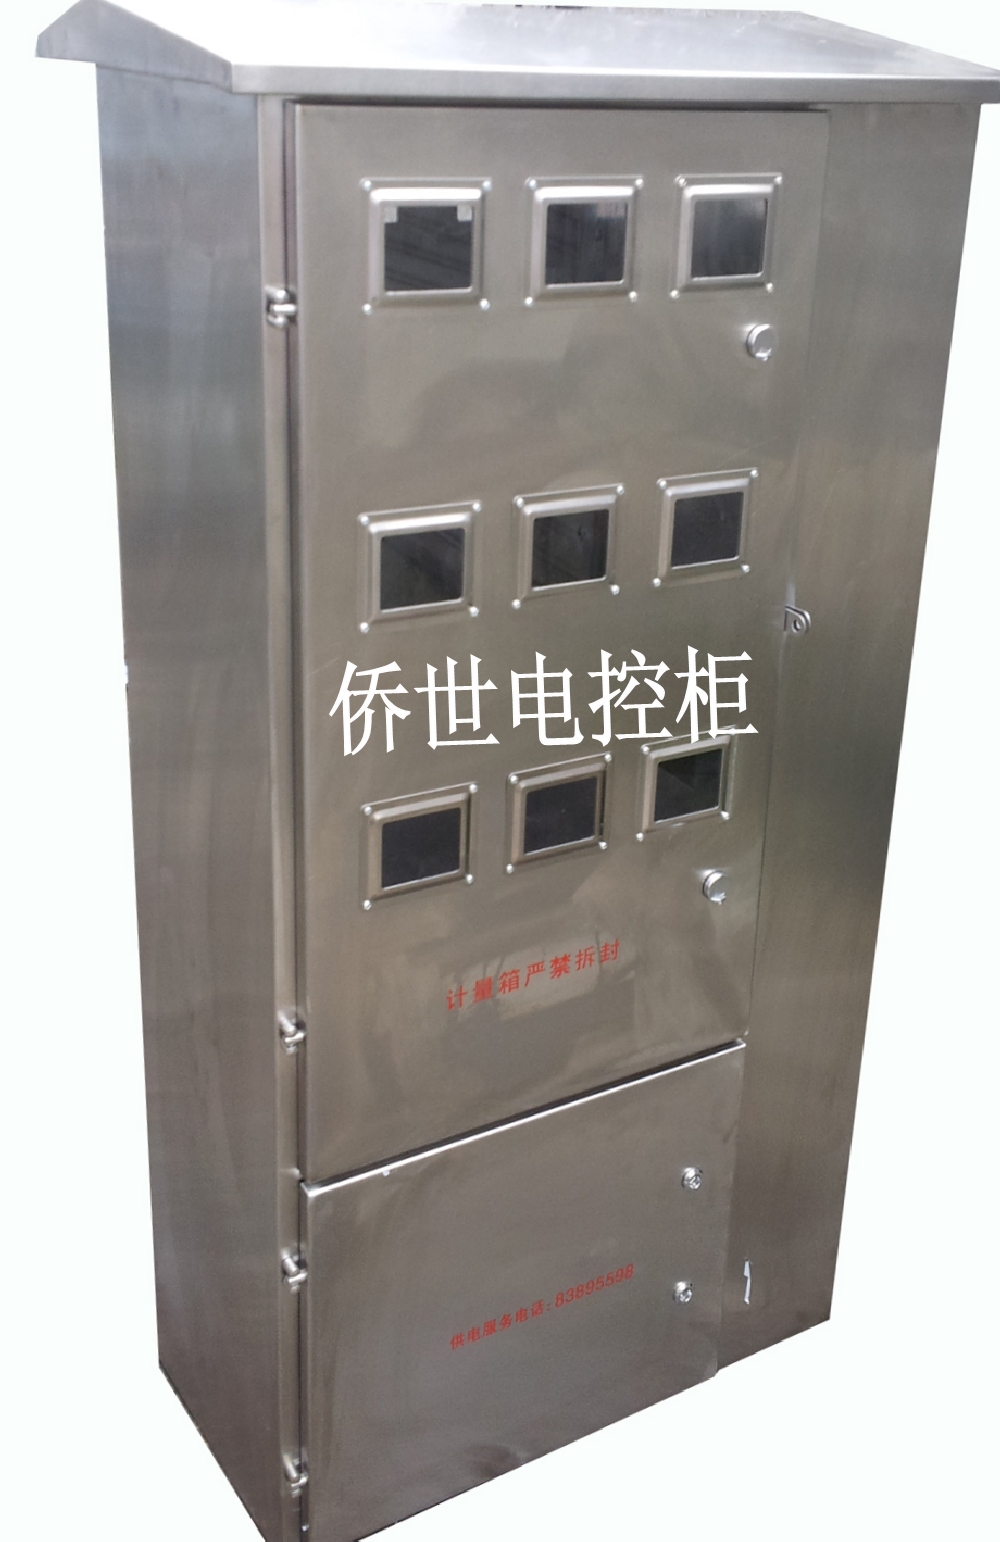 温州质量硬的不锈钢电表箱价格怎么样――价位合理的电表箱